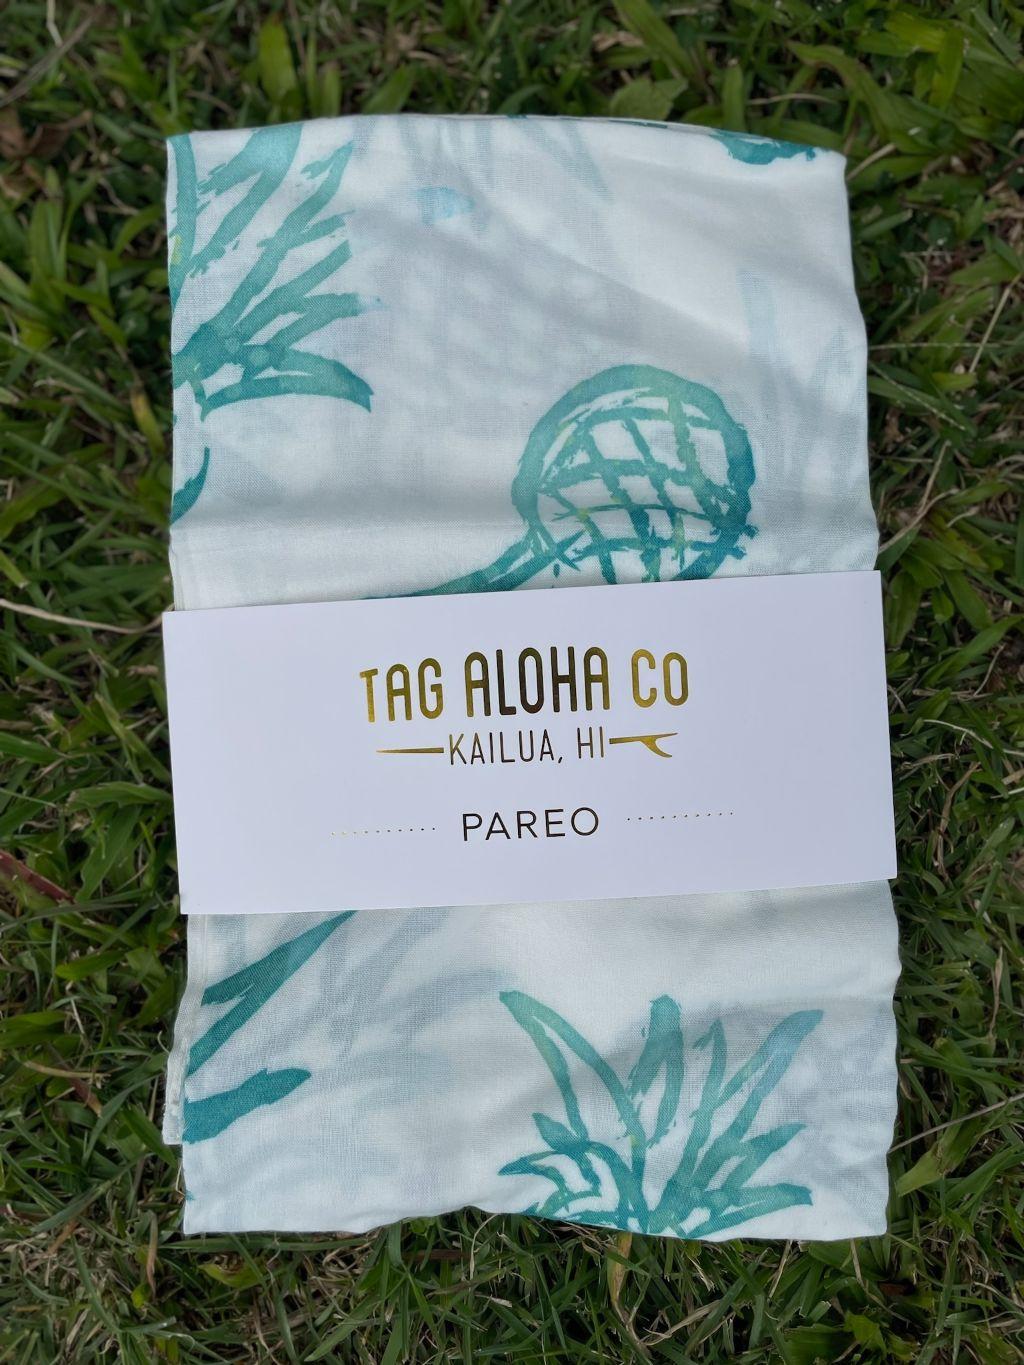 Tag Aloha Co. Pareo